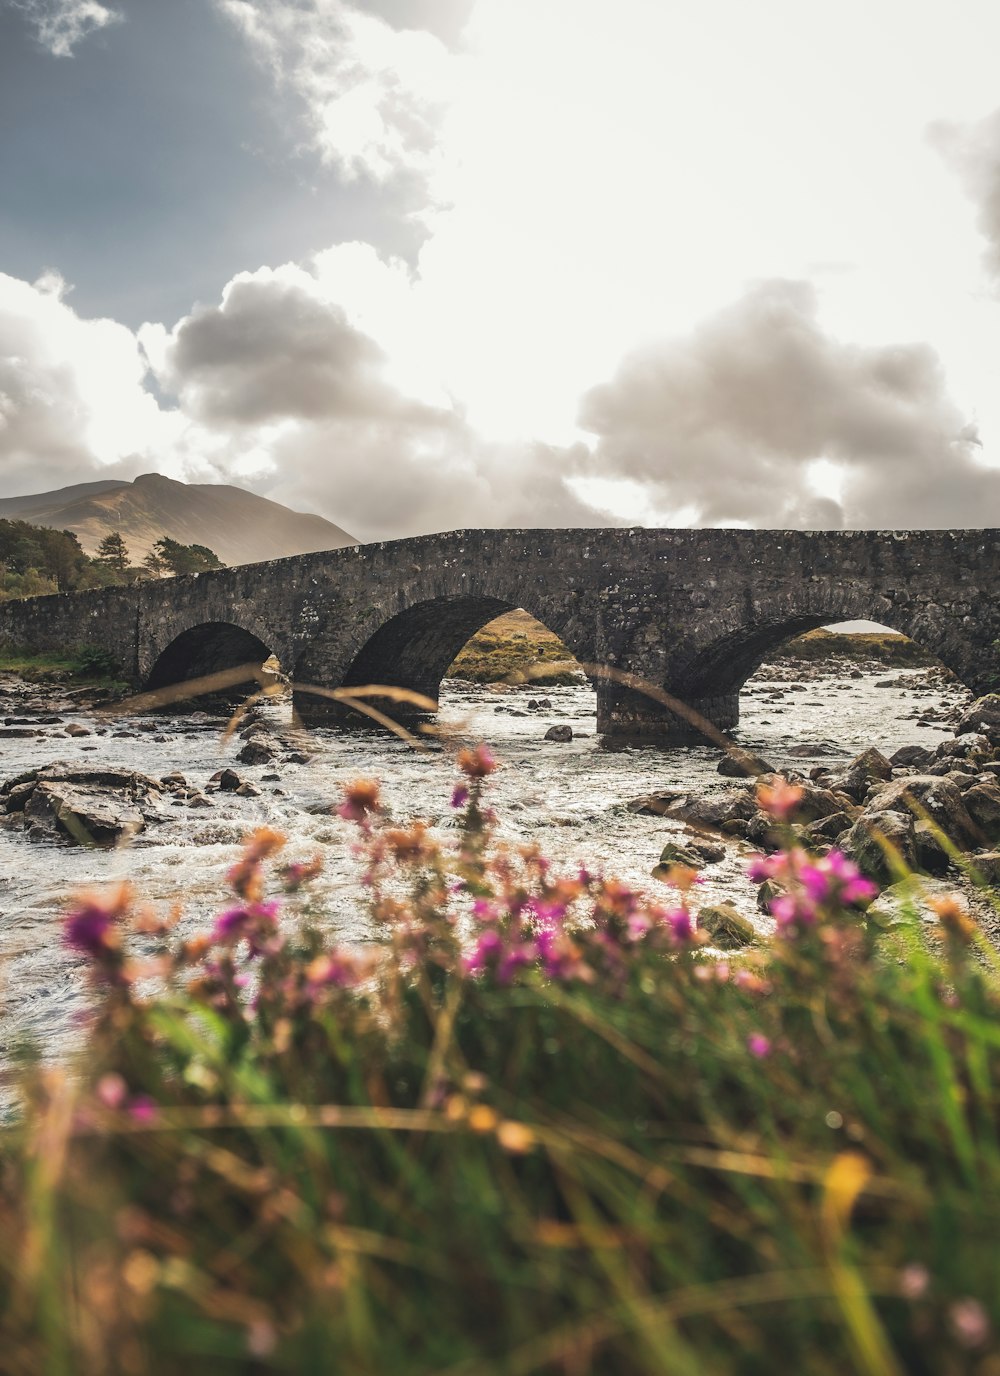 前景に野花が咲く川に架かる石橋